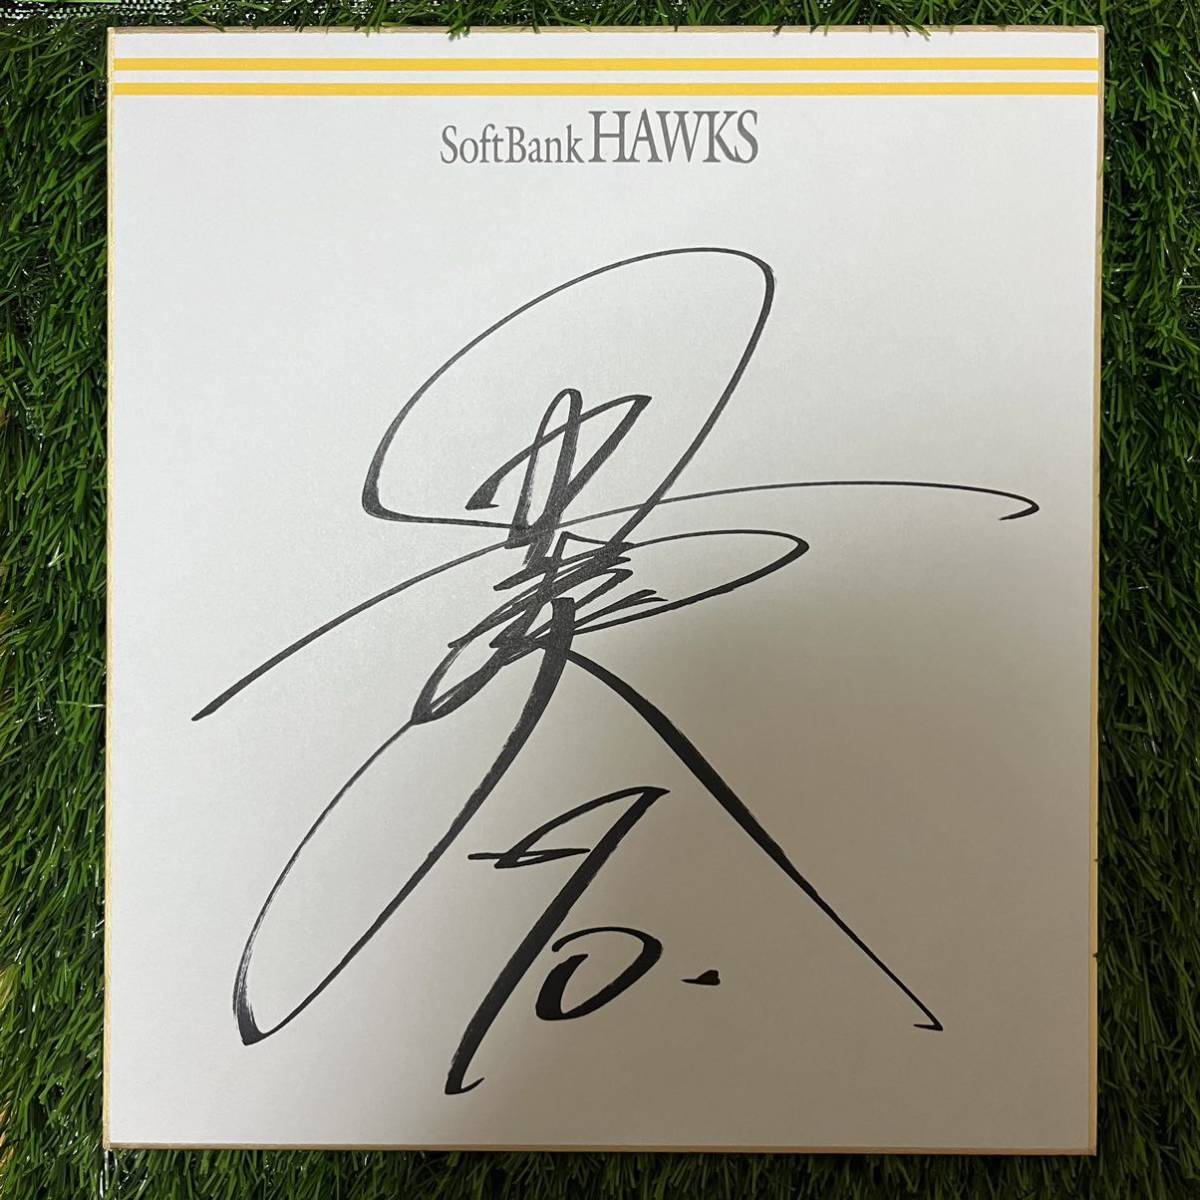 Softbank Hawks Soudai Tagami #70 цветная бумага с автографом, бейсбол, Сувенир, Сопутствующие товары, знак